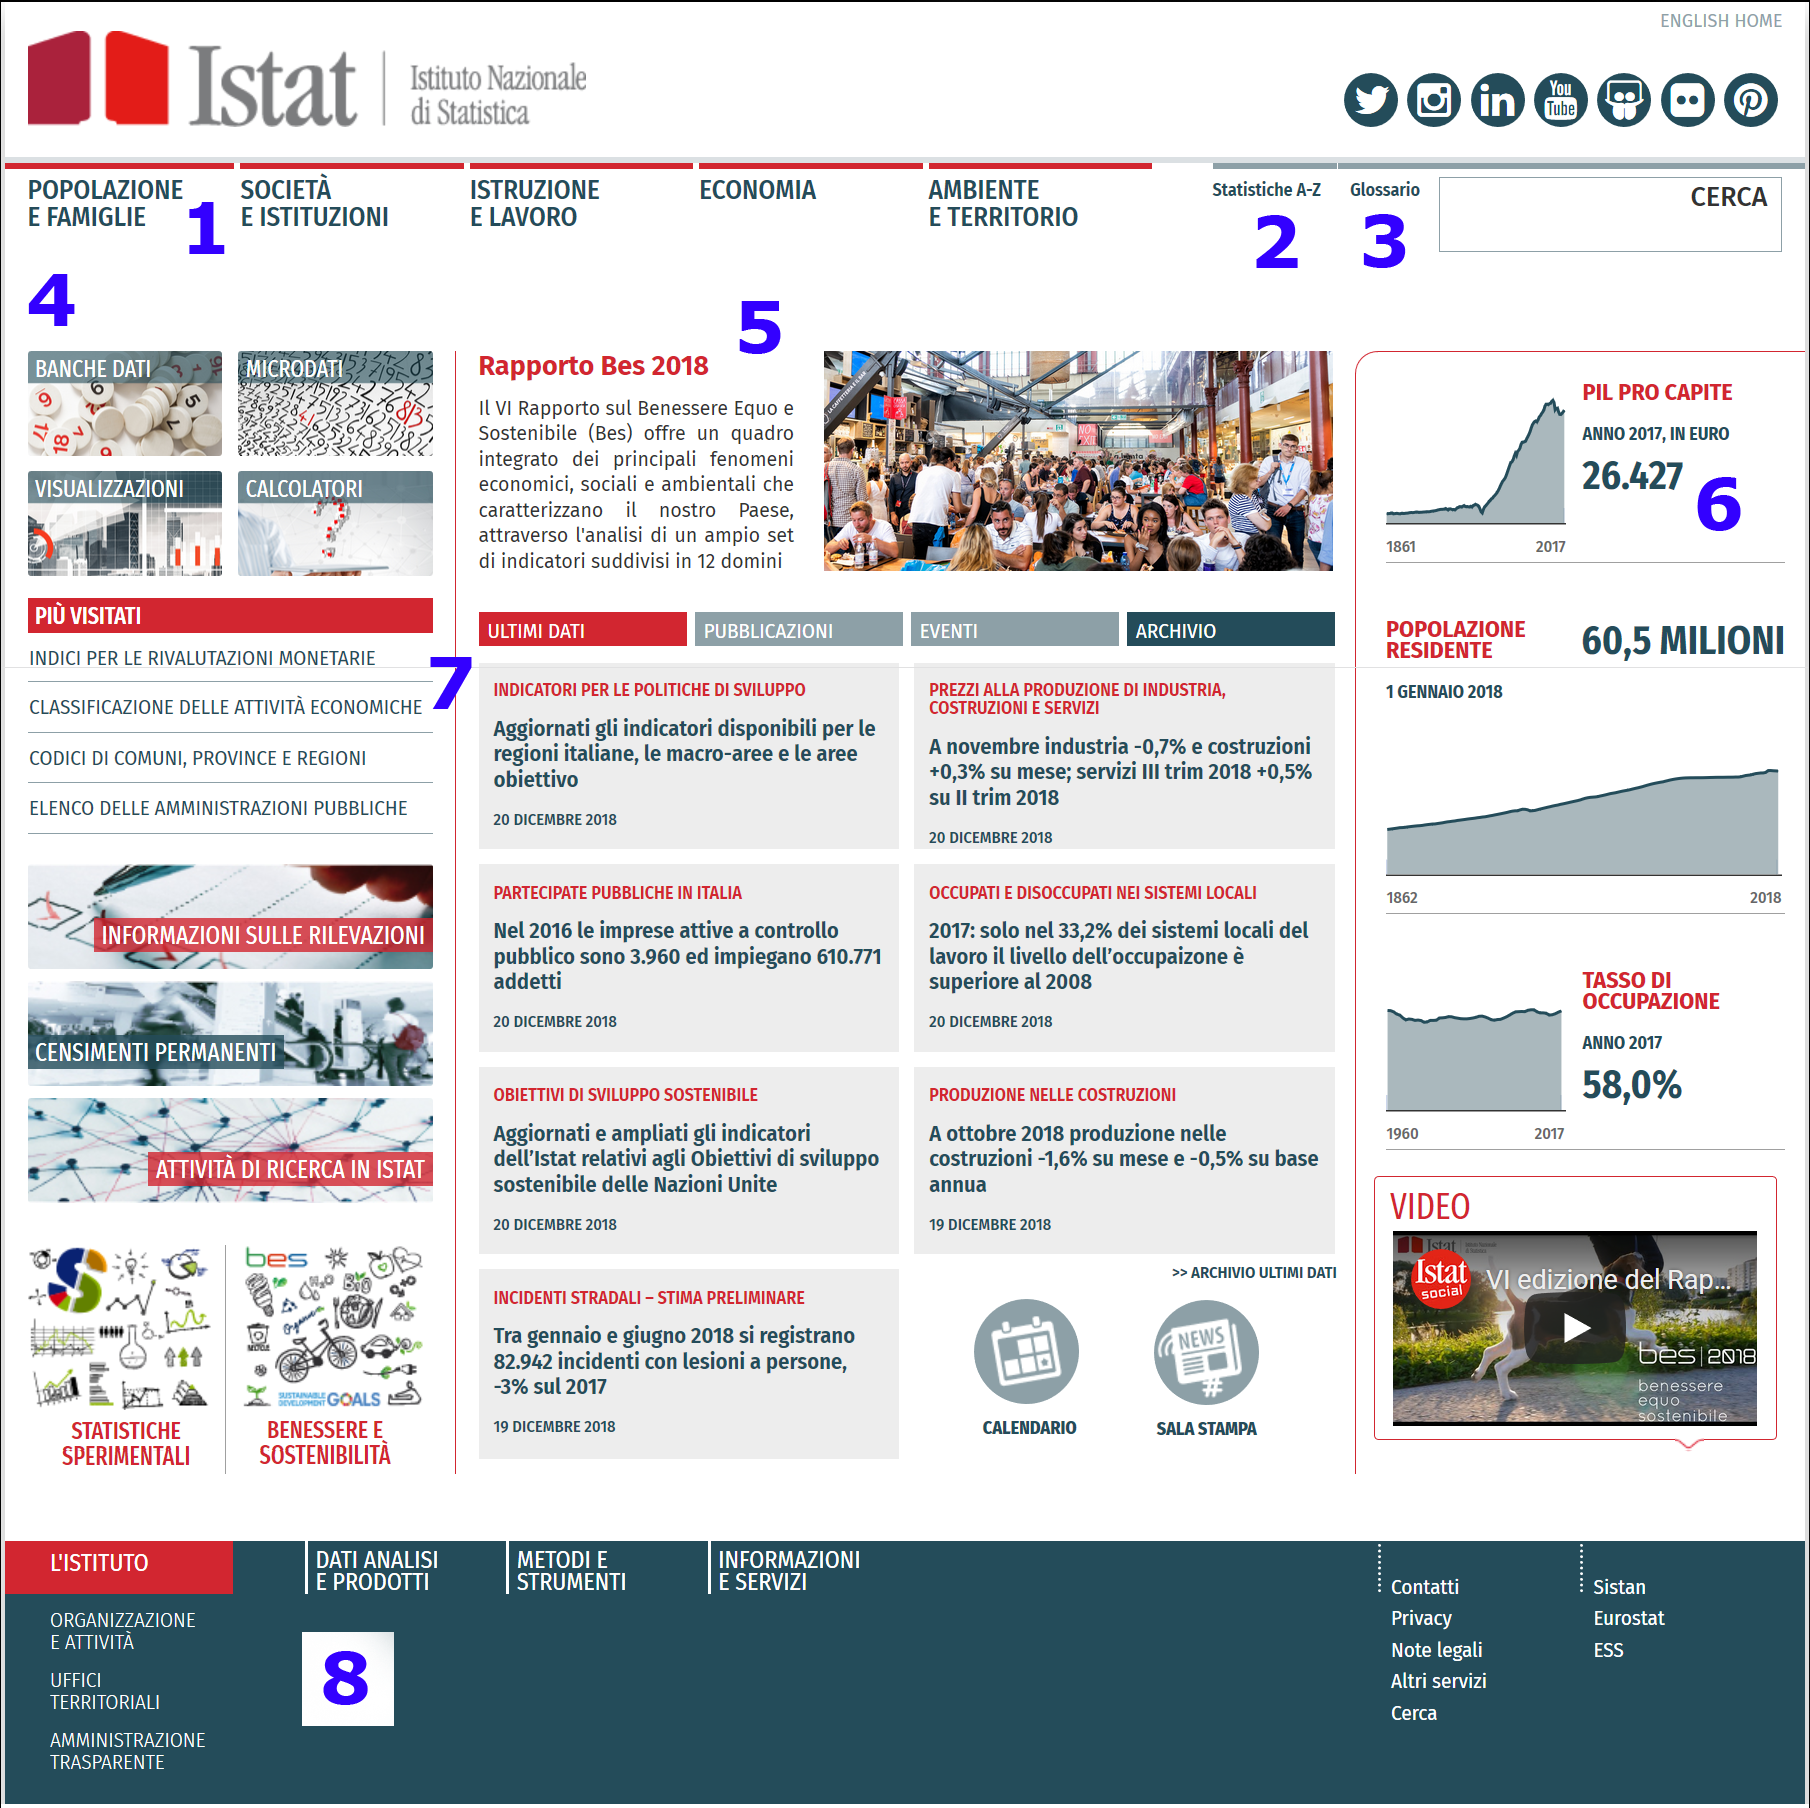 Pagina principale del sito Istat.